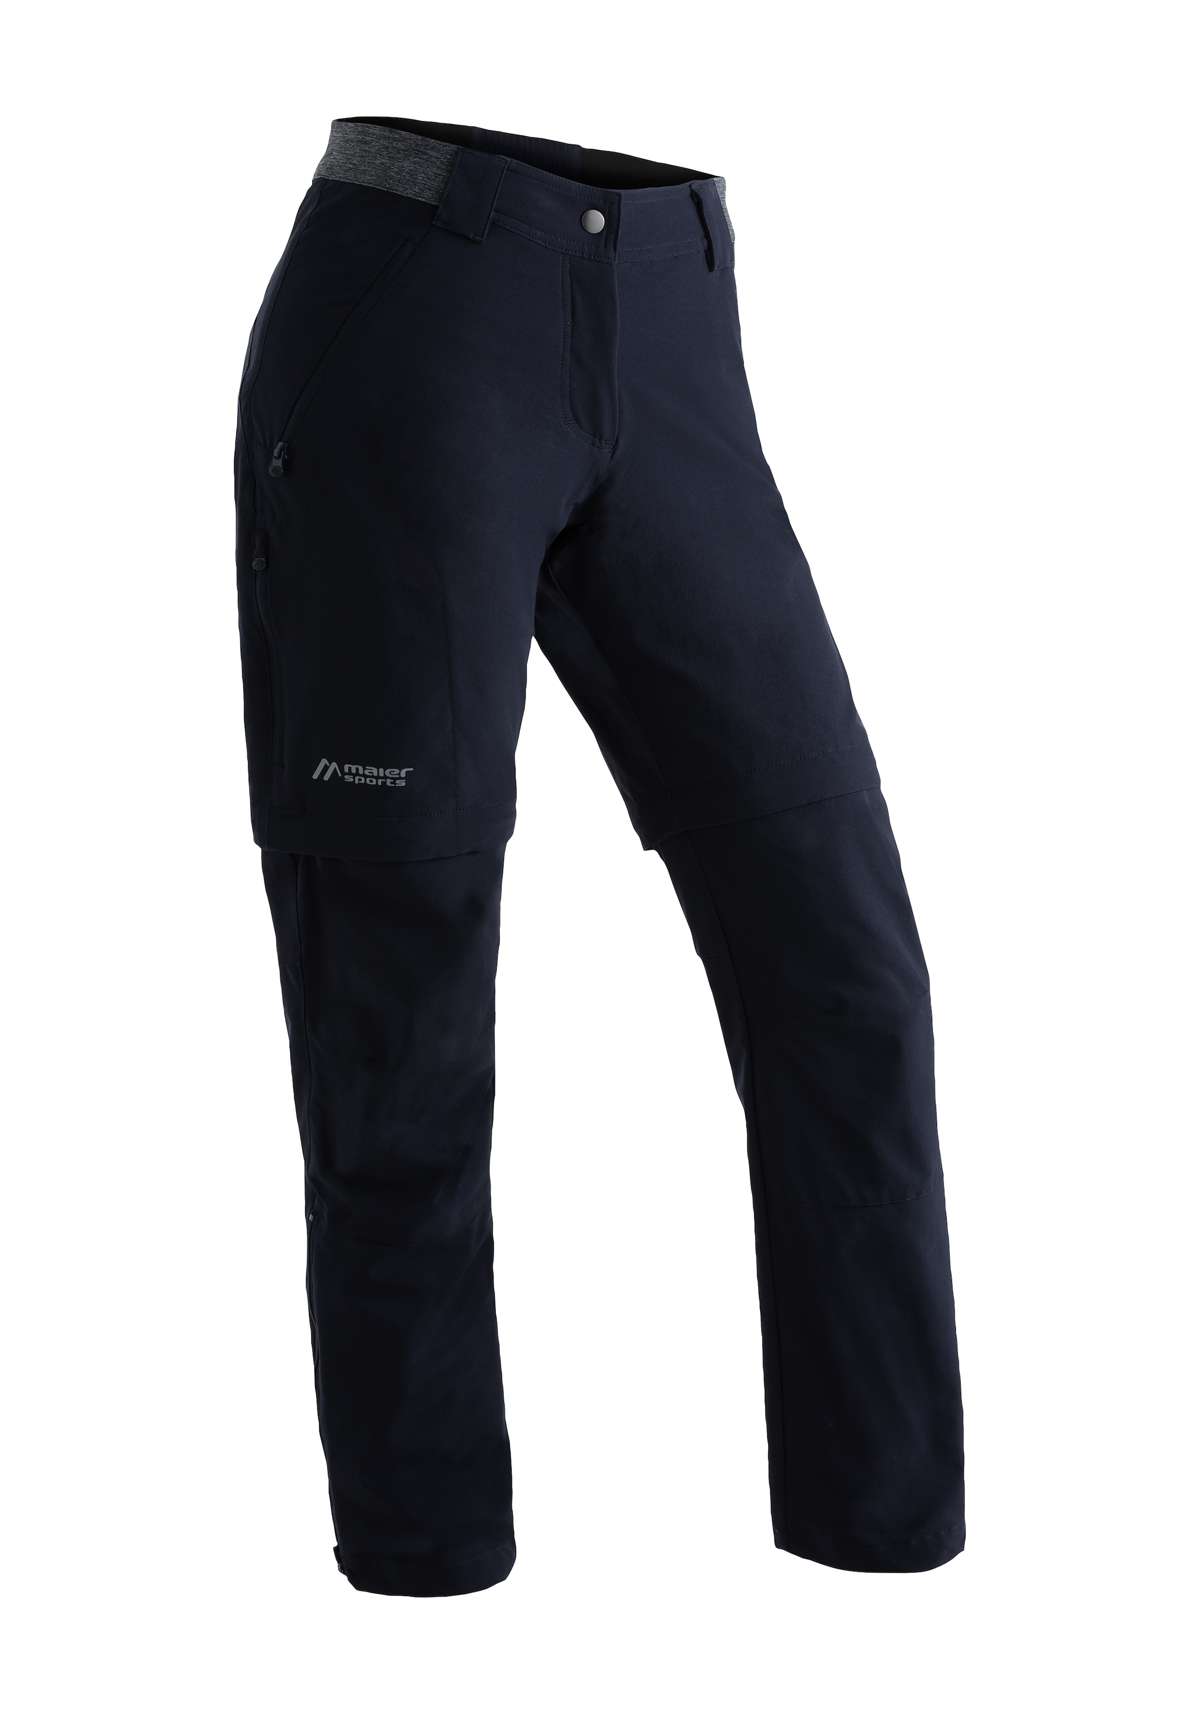 Функциональные брюки с практичной функцией застежки-молнии.